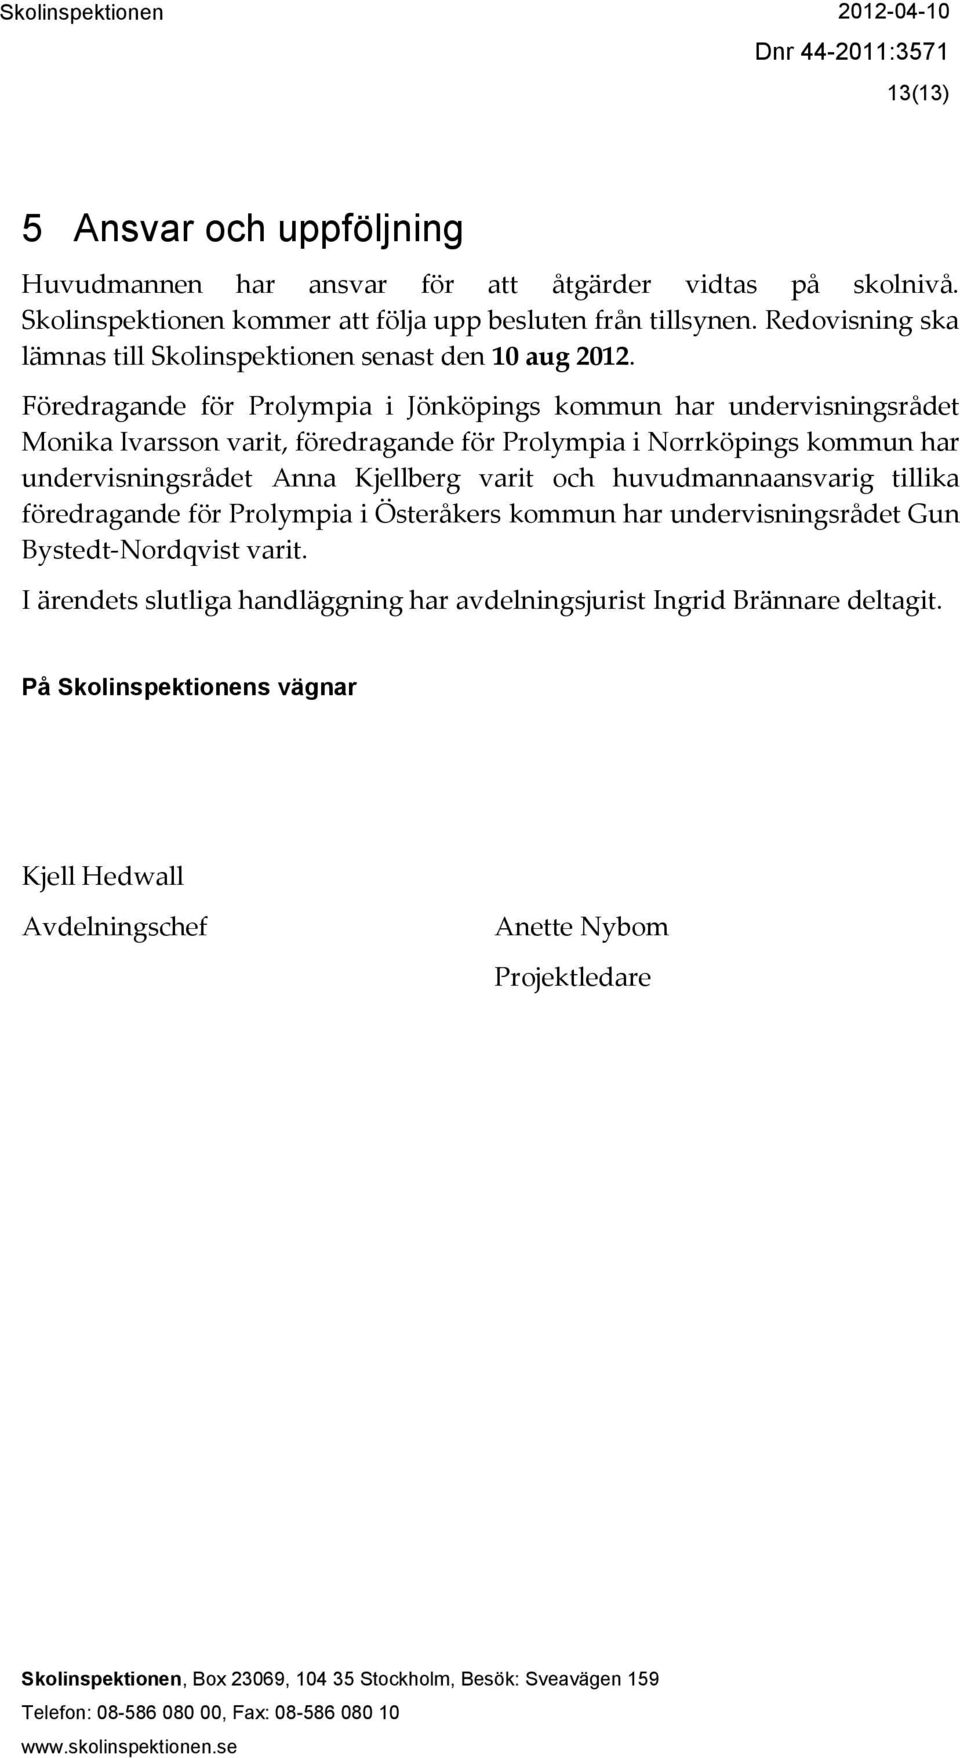 Föredragande för Prolympia i Jönköpings kommun har undervisningsrådet Monika Ivarsson varit, föredragande för Prolympia i Norrköpings kommun har undervisningsrådet Anna